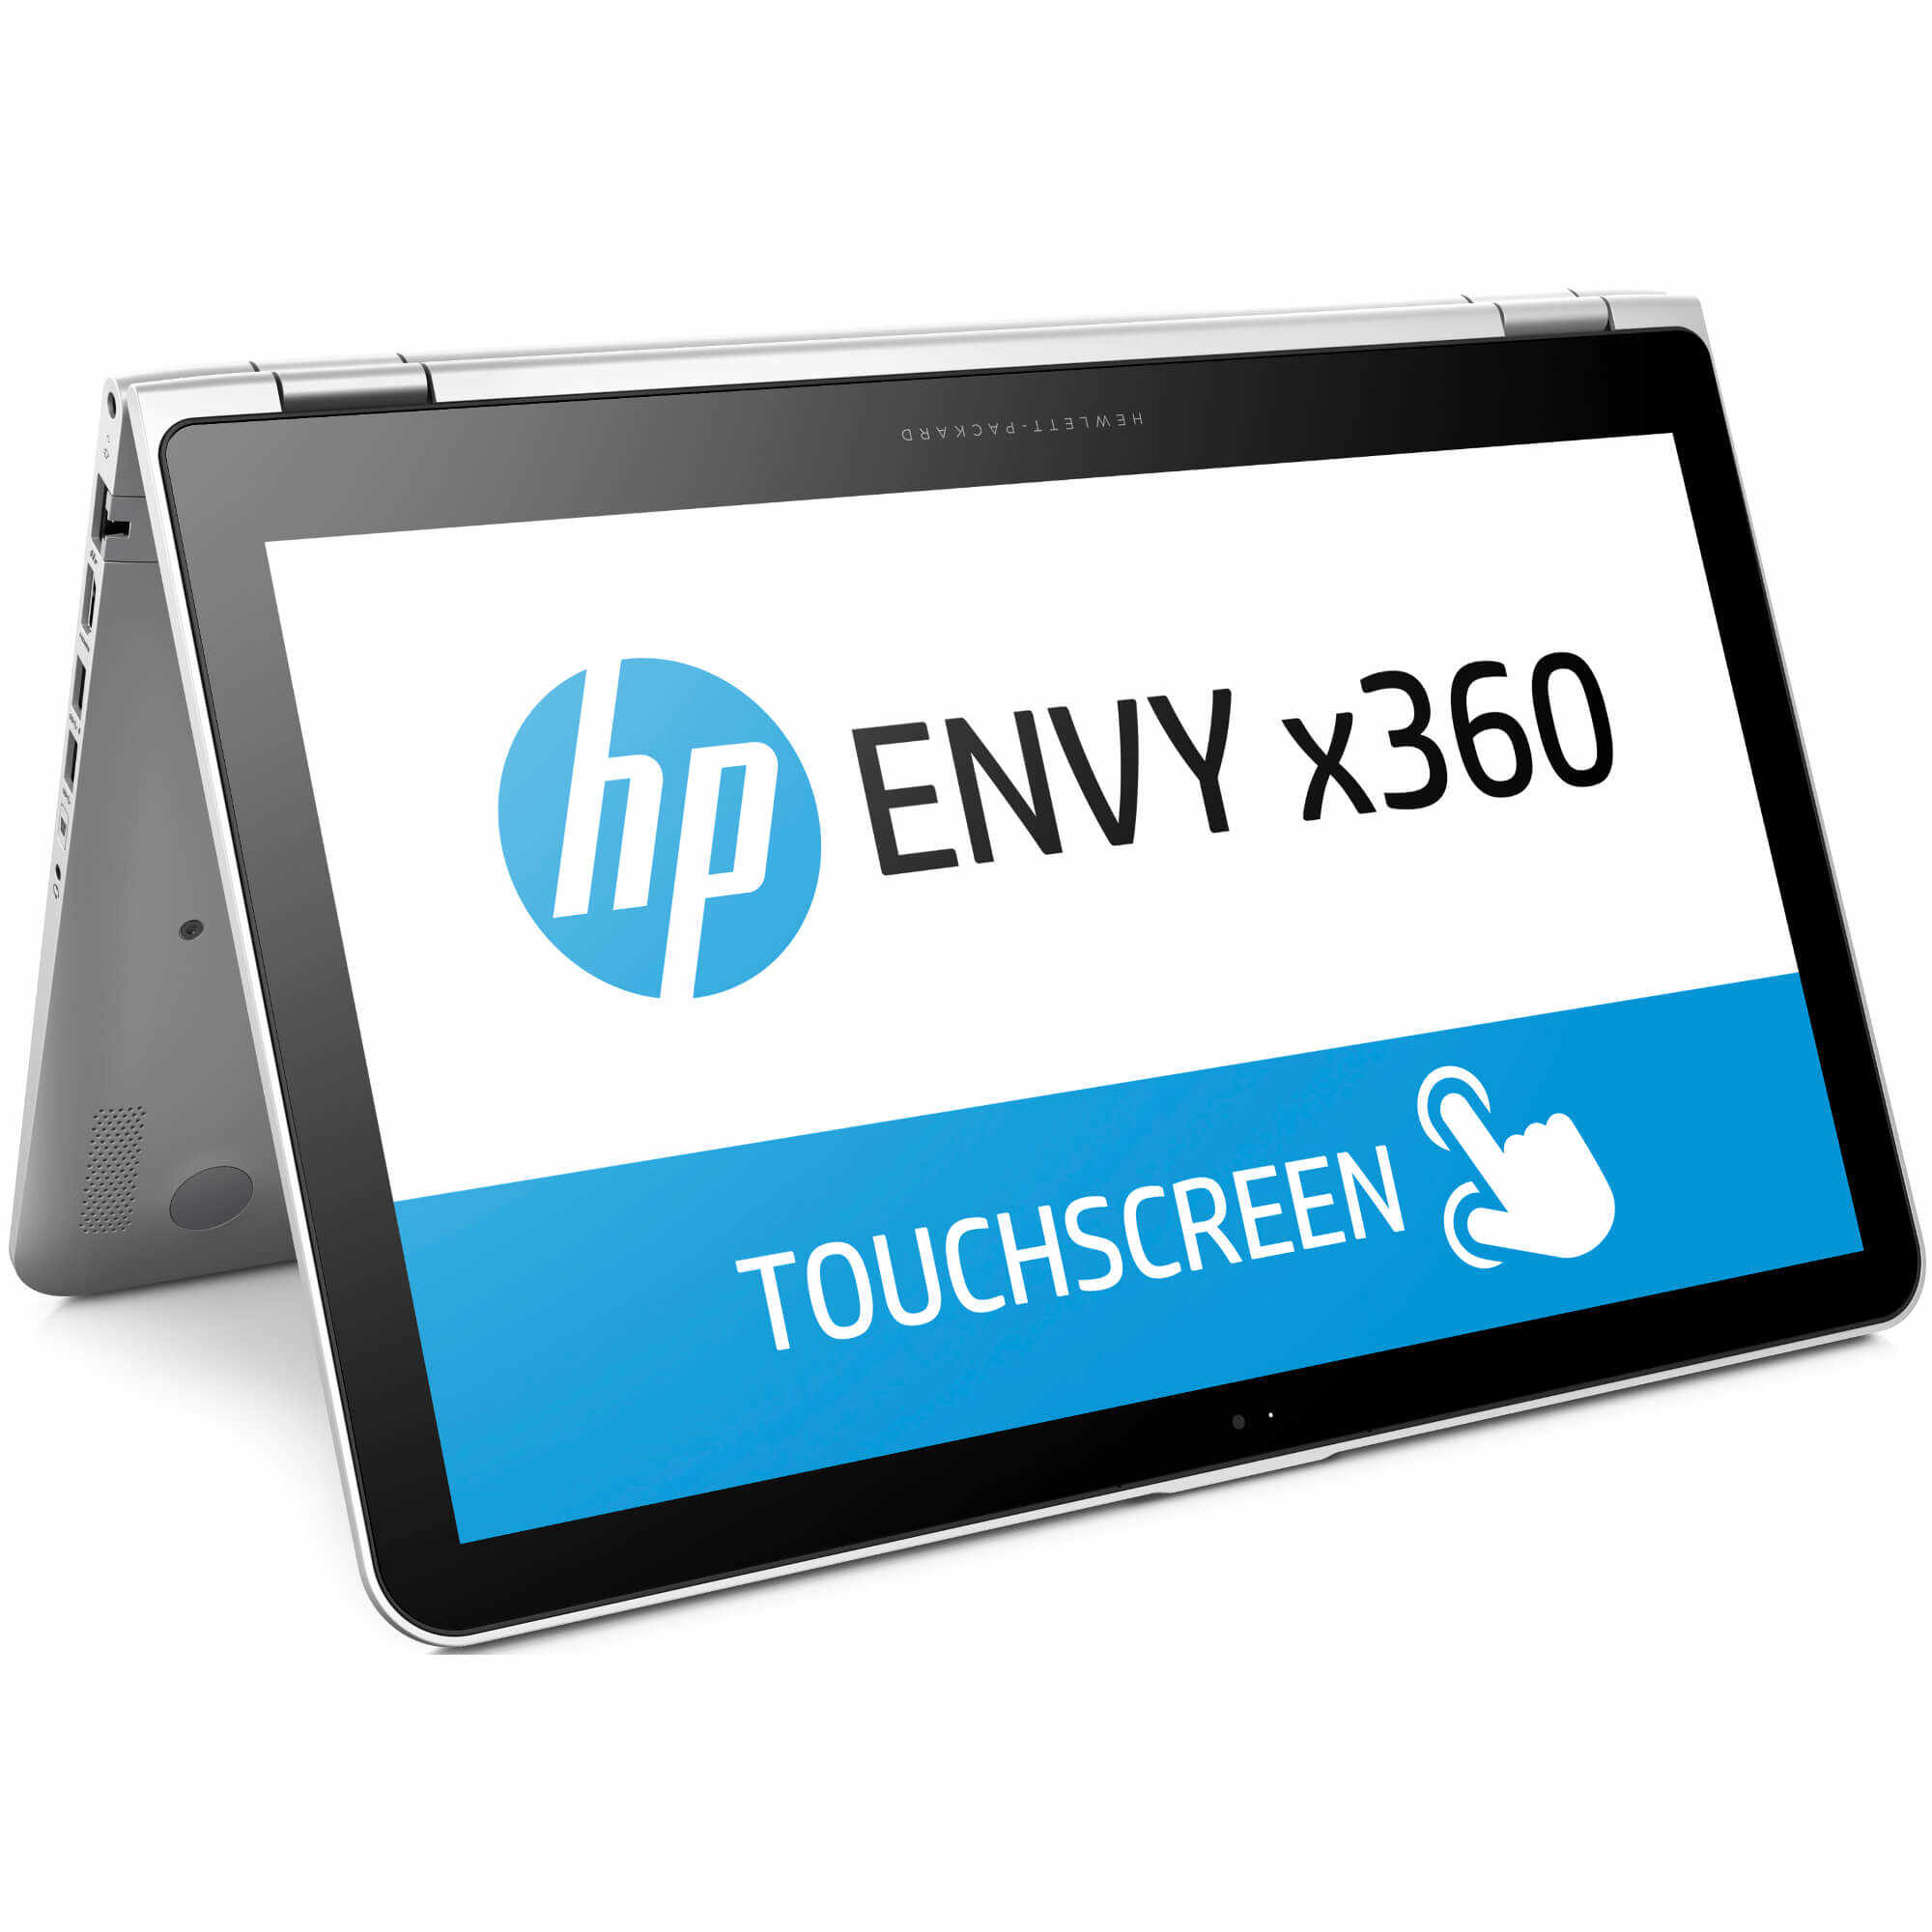 Laptop 2 in 1 HP Envy x360 15-W002NQ, Intel Core i5-5200U, 4GB DDR3, HDD 500GB, nVidia GeForce GT 930M 2GB, Windows 8